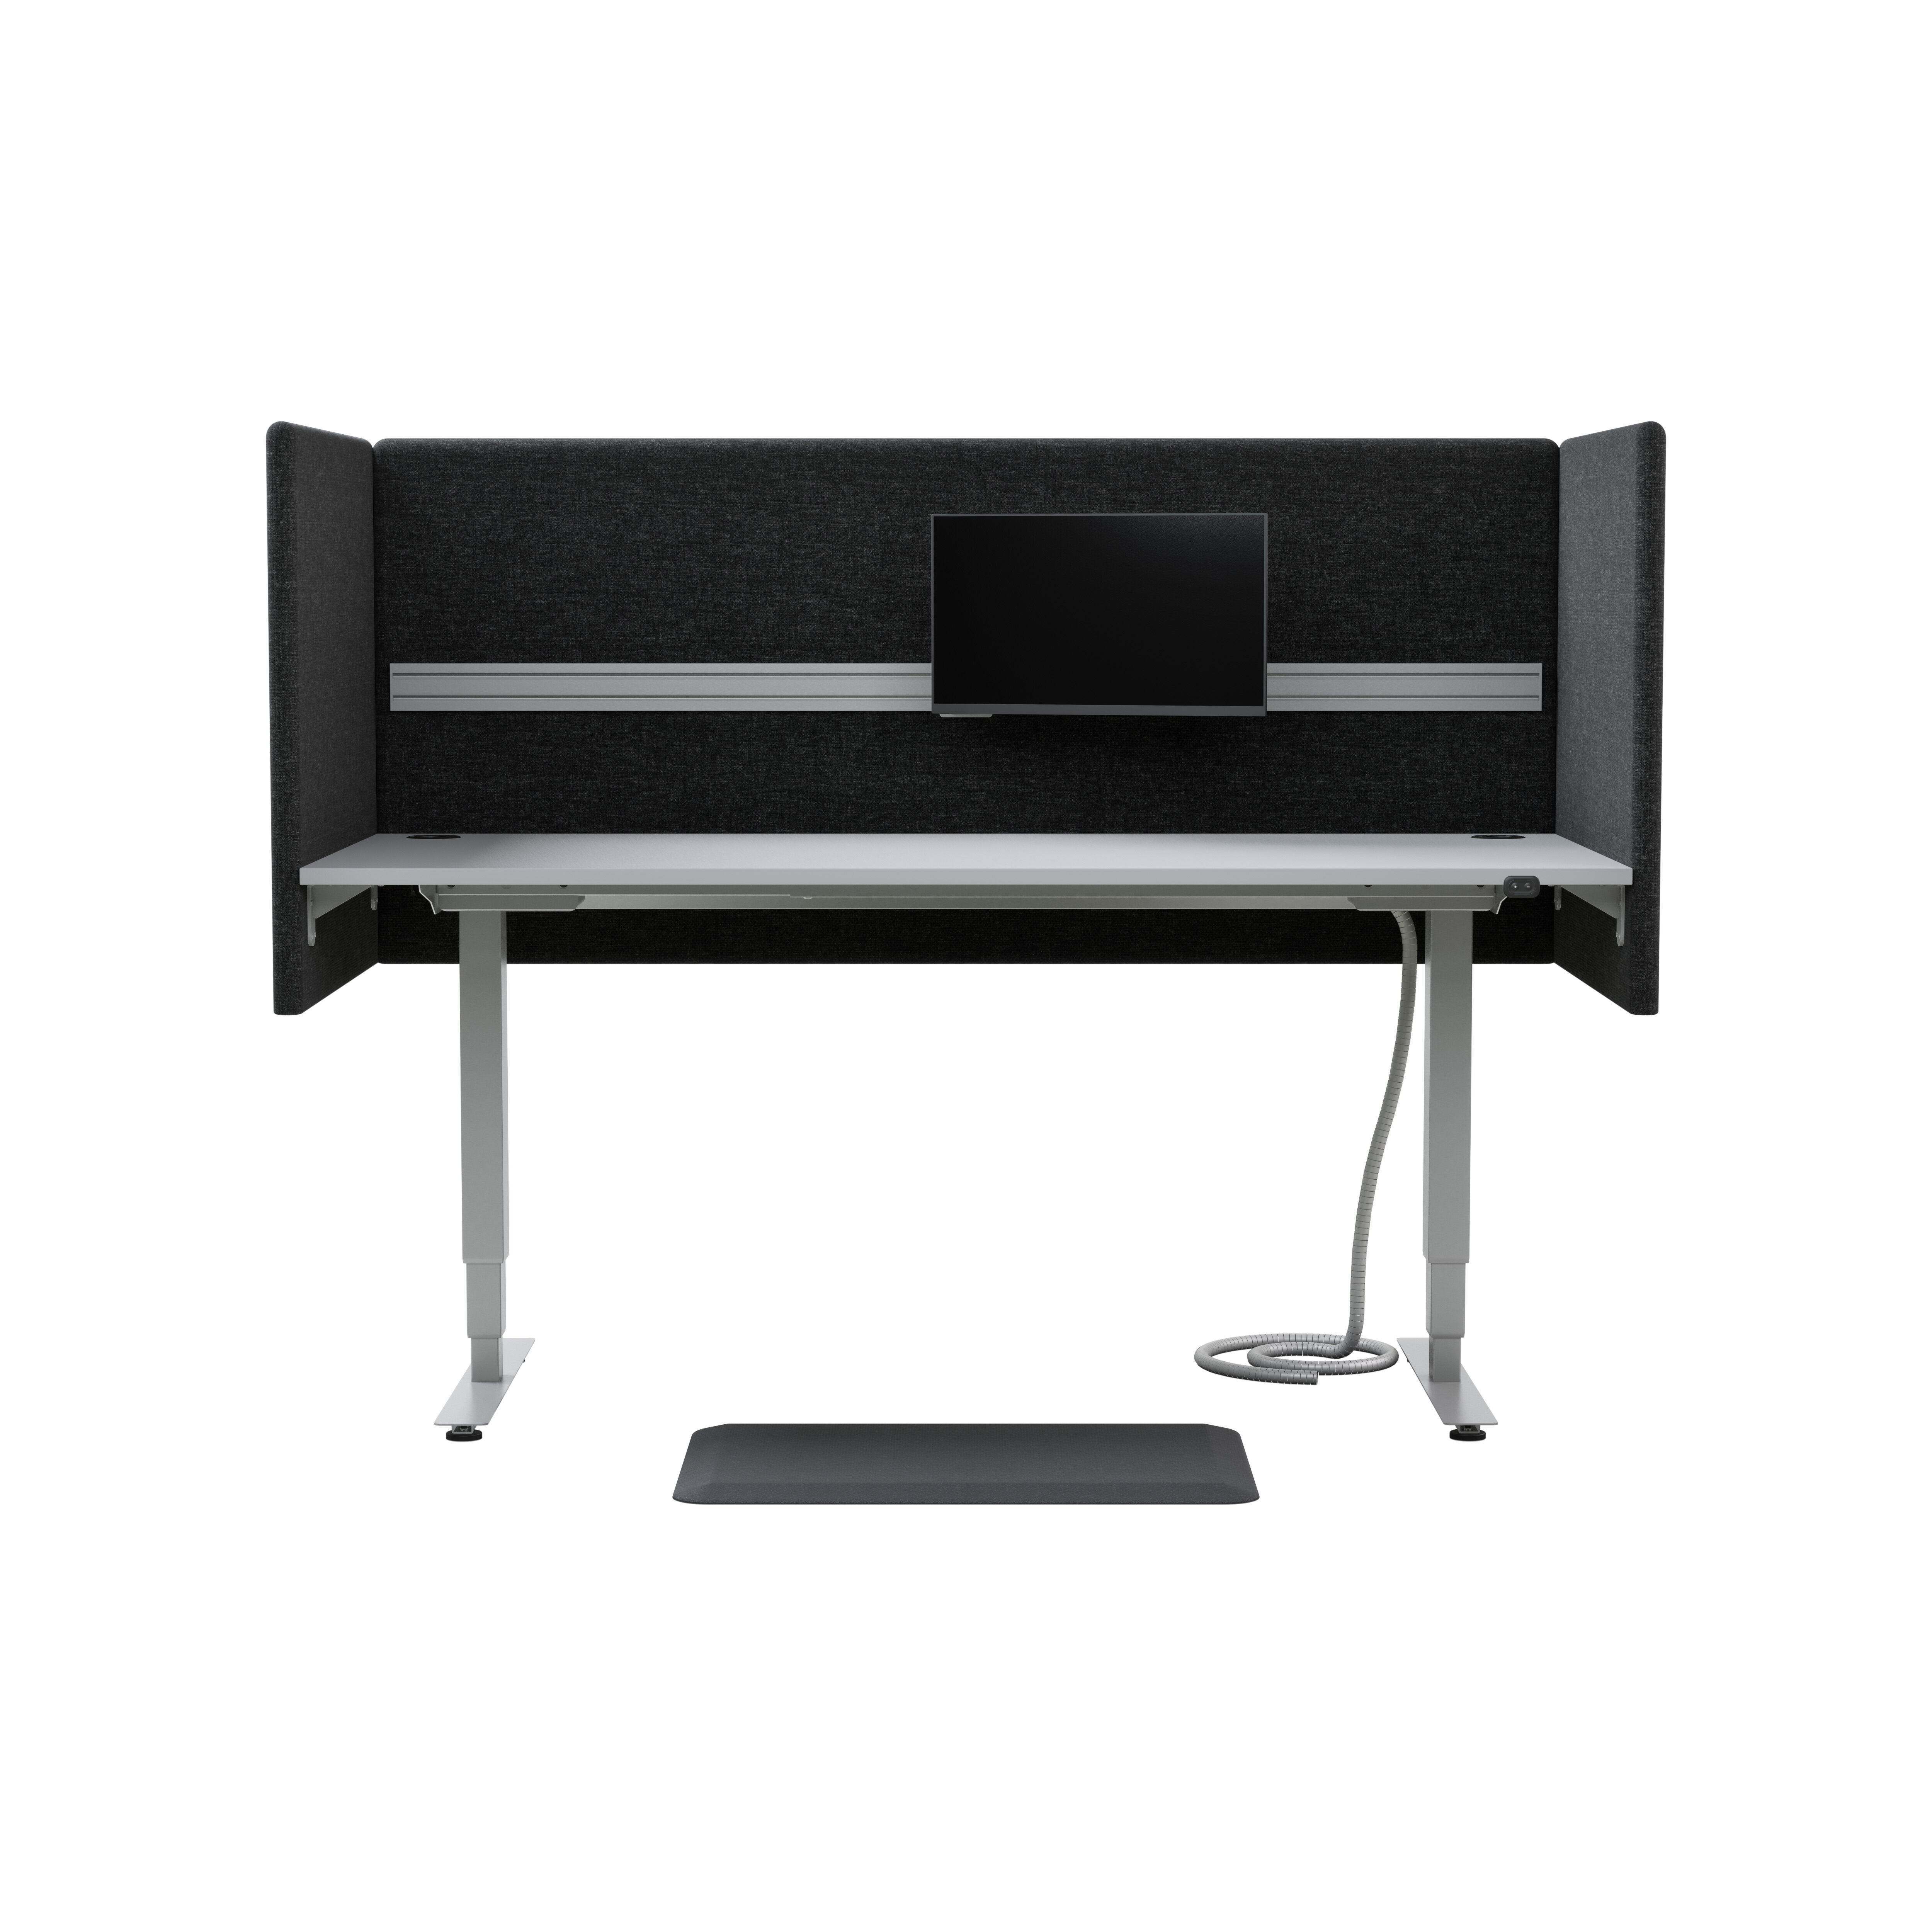 Izi Pro Desk sit/stand product image 6